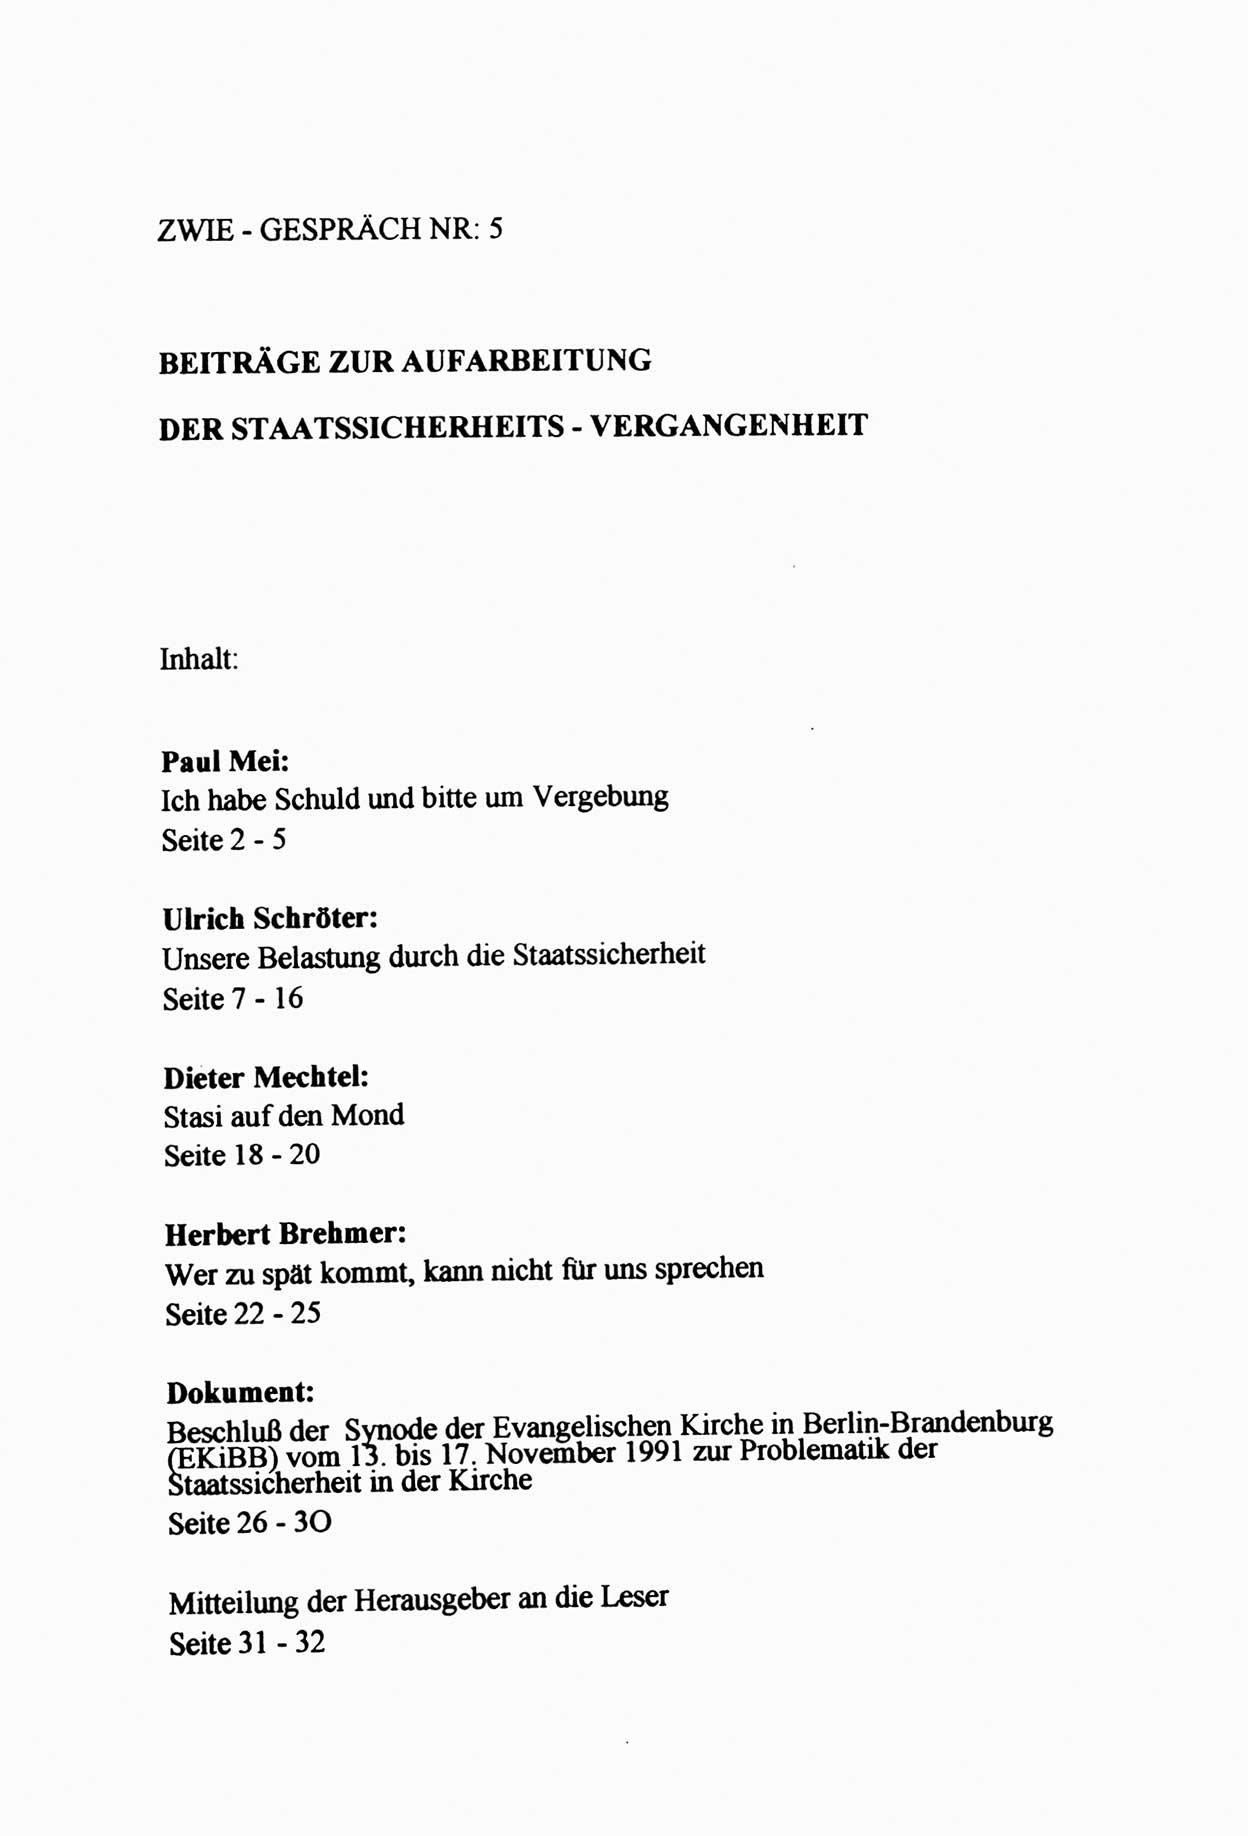 Zwie-Gespräch, Beiträge zur Aufarbeitung der Staatssicherheits-Vergangenheit [Deutsche Demokratische Republik (DDR)], Ausgabe Nr. 5, Berlin 1991, Seite 33 (Zwie-Gespr. Ausg. 5 1991, S. 33)